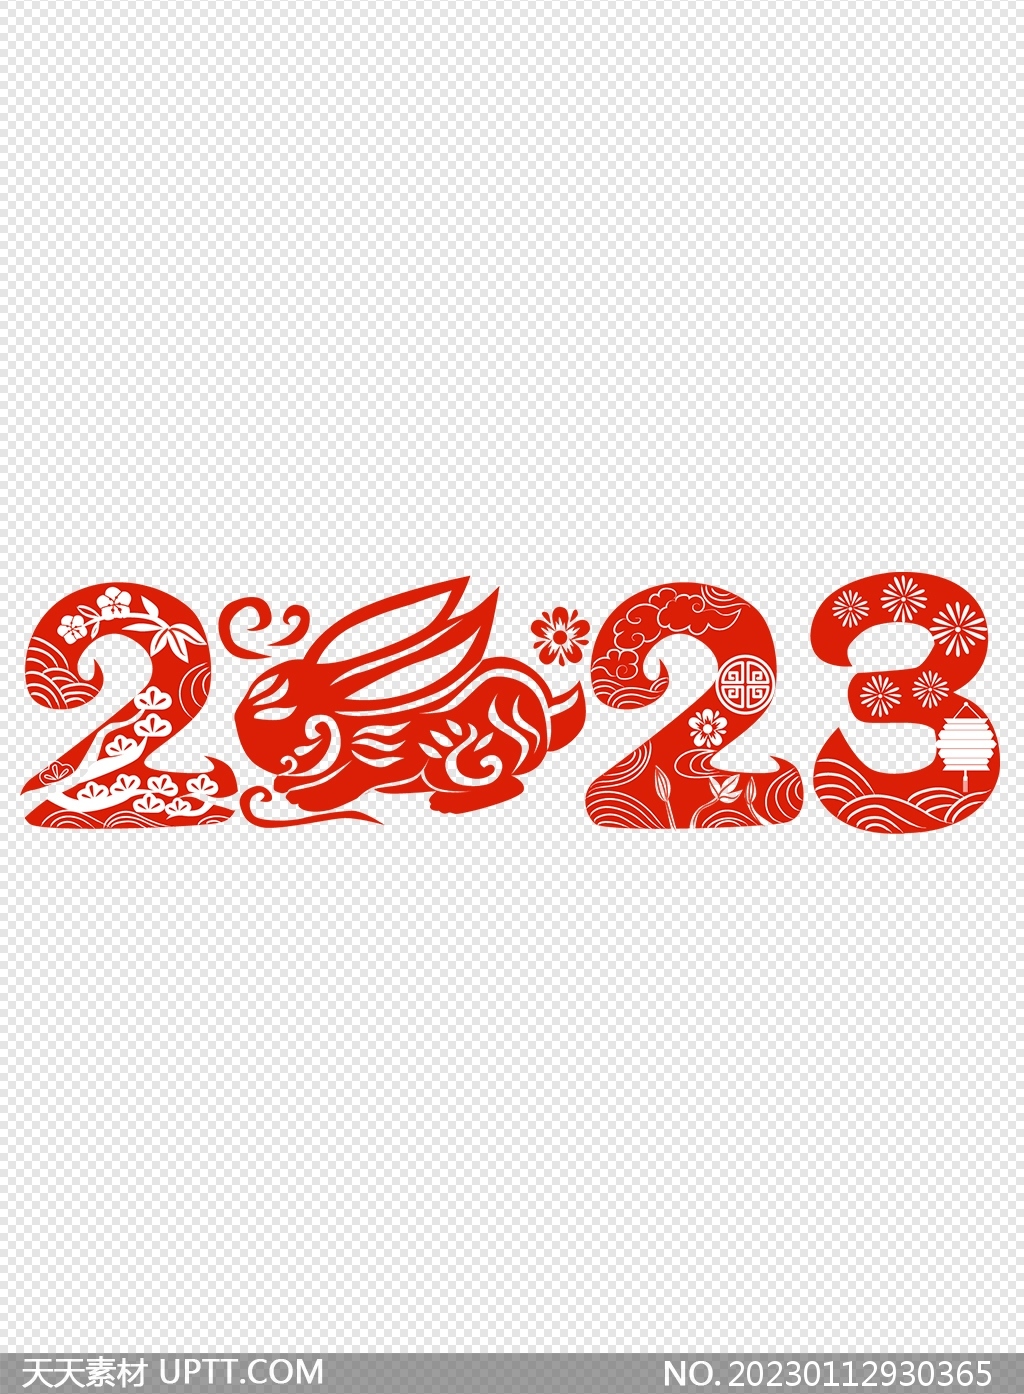 2023兔年数字剪纸元素矢量素材